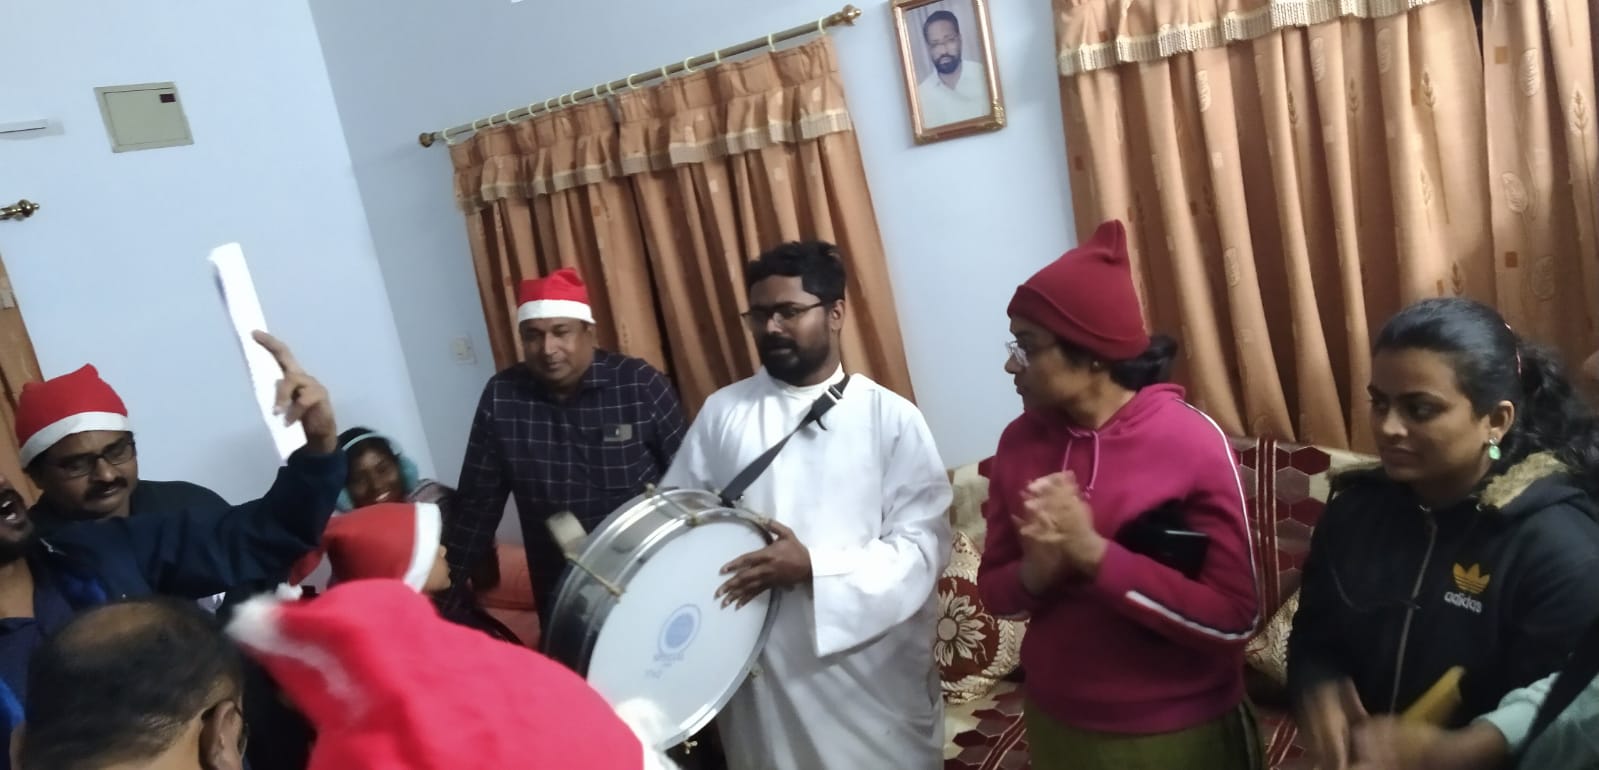 क्रिसमस पर्व पर ईसाई समुदाय के घरों में गाये जा रहे कैरोल सांग